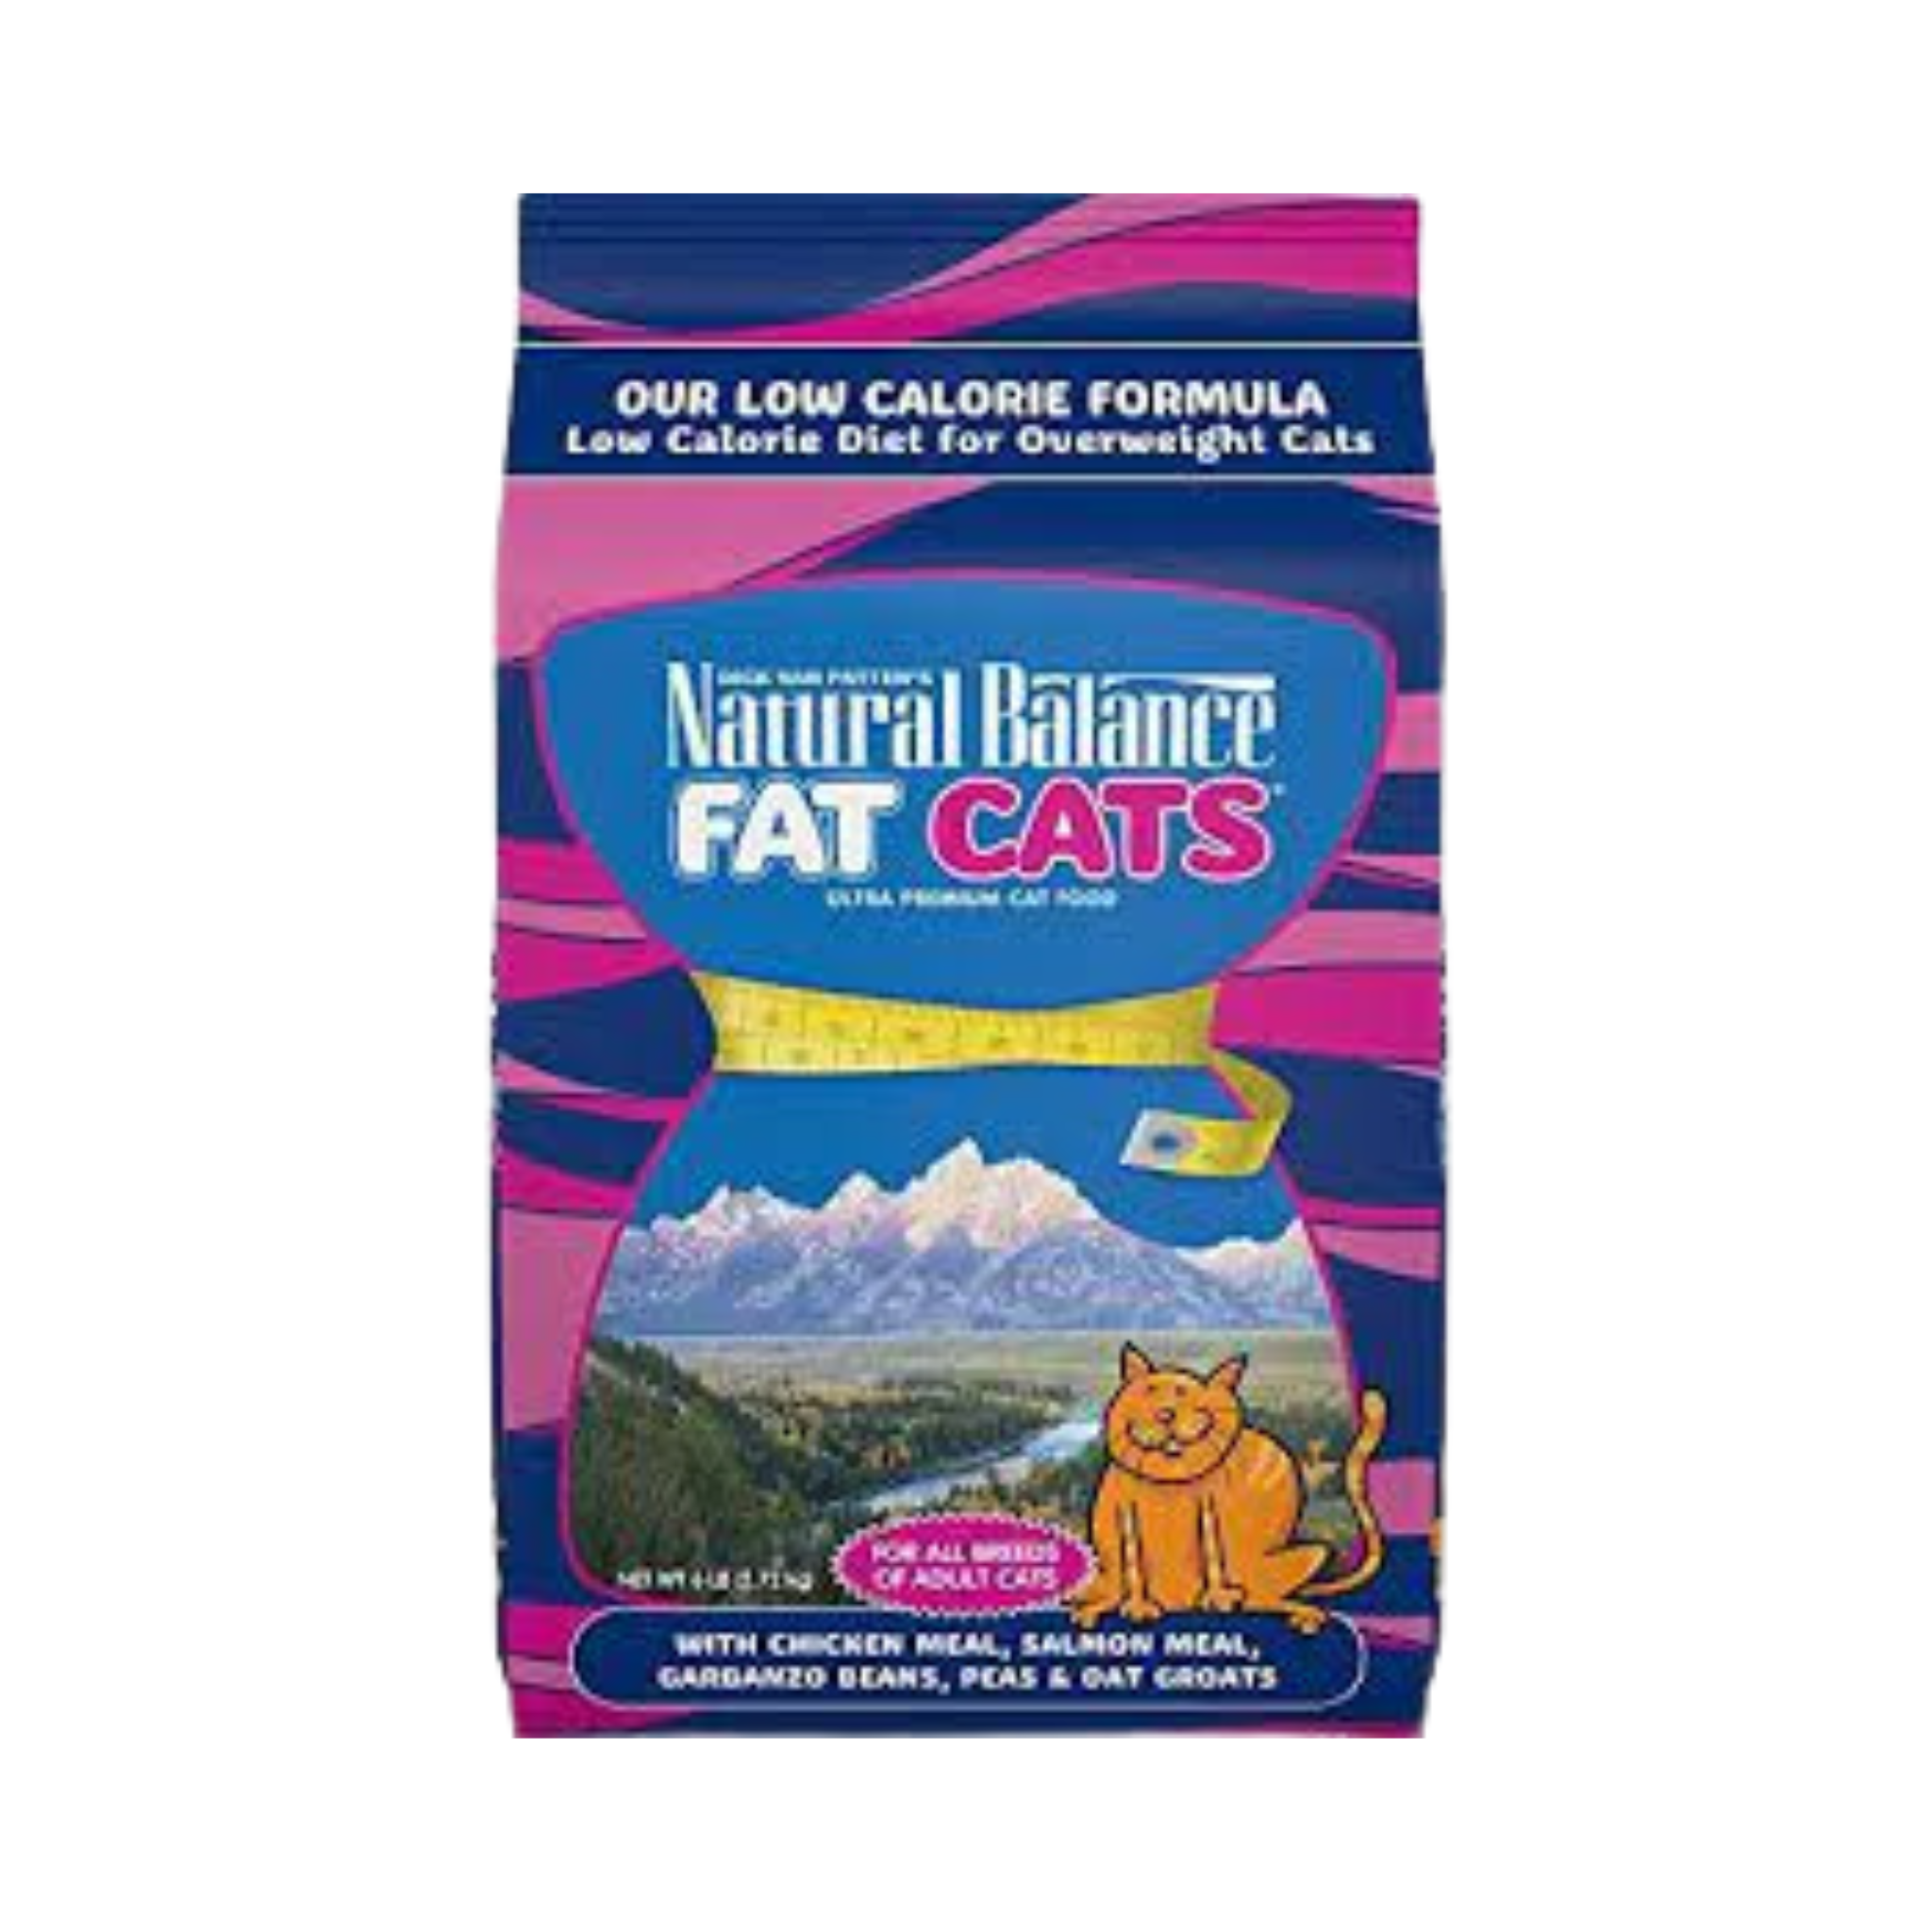 Natural Balance Fat Cat Food